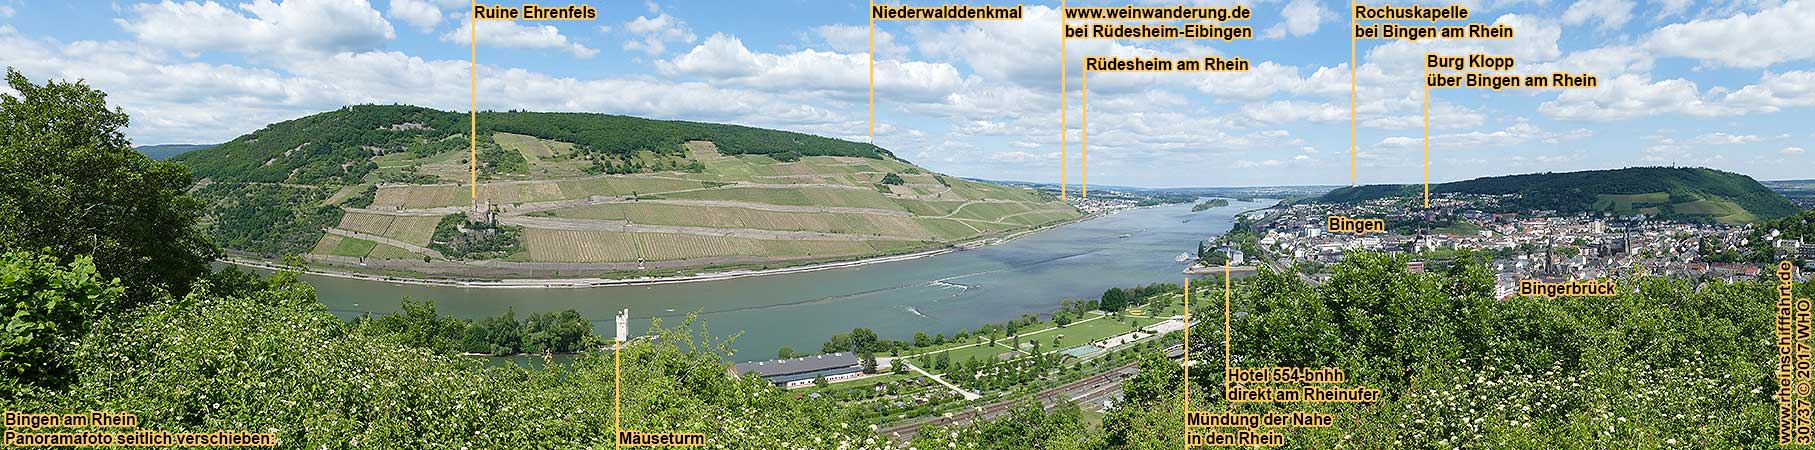 Urlaub ber Silvester in Bingen am Rhein, Silvesterkurzurlaub am Tor zum Mittelrhein zwischen Rdesheim, Mainz, Wiesbaden, Frankfurt am Main, Loreley und Koblenz